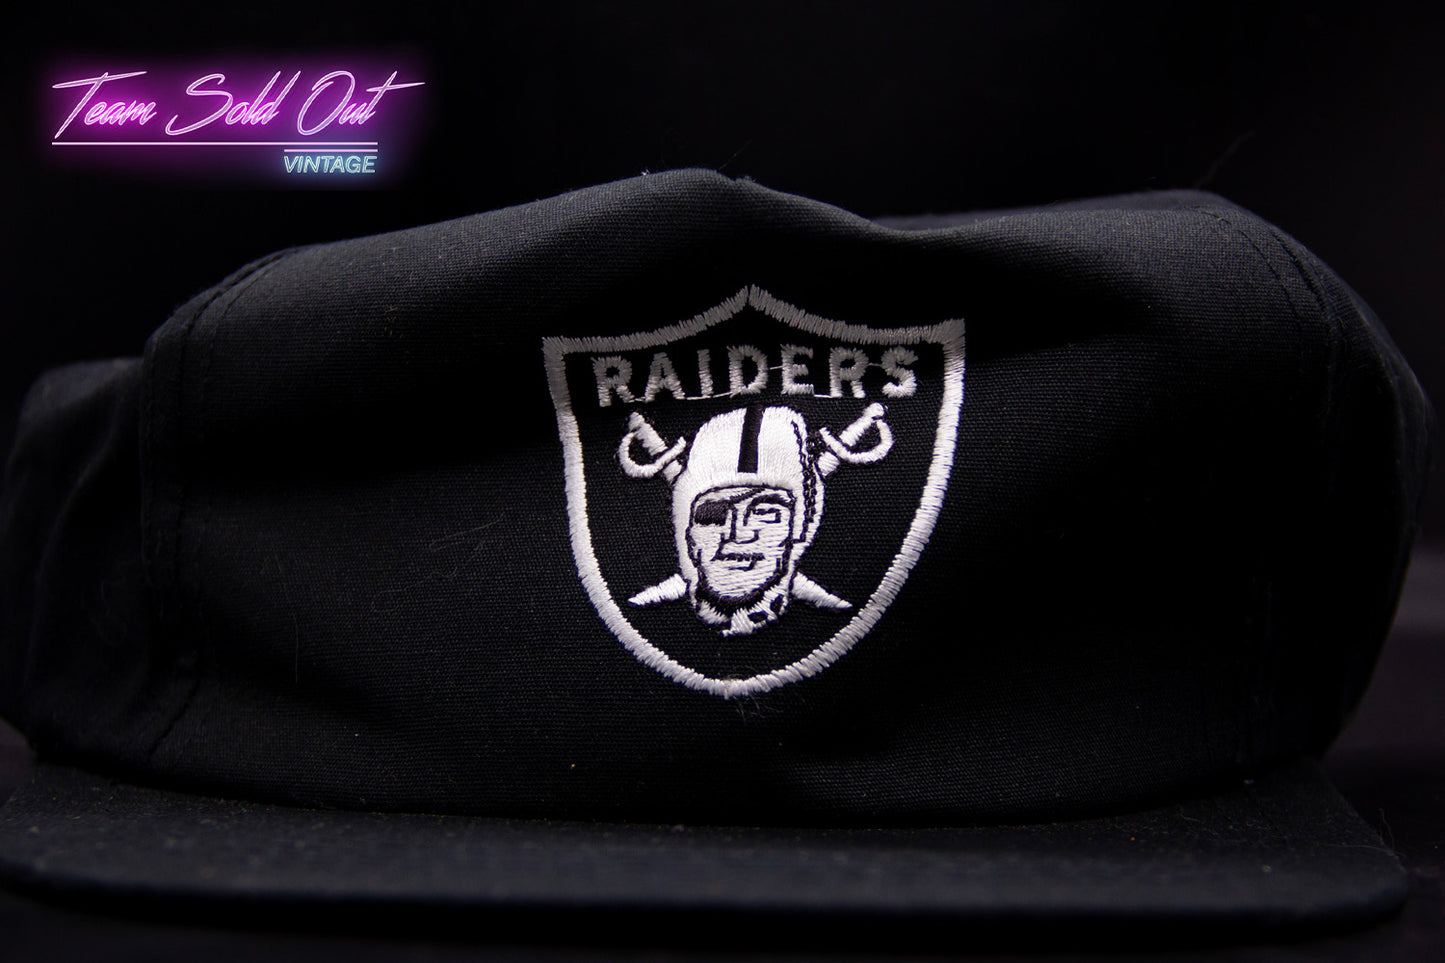 Vintage Los Angeles Raiders Plain Logo Snapback Hat NFL